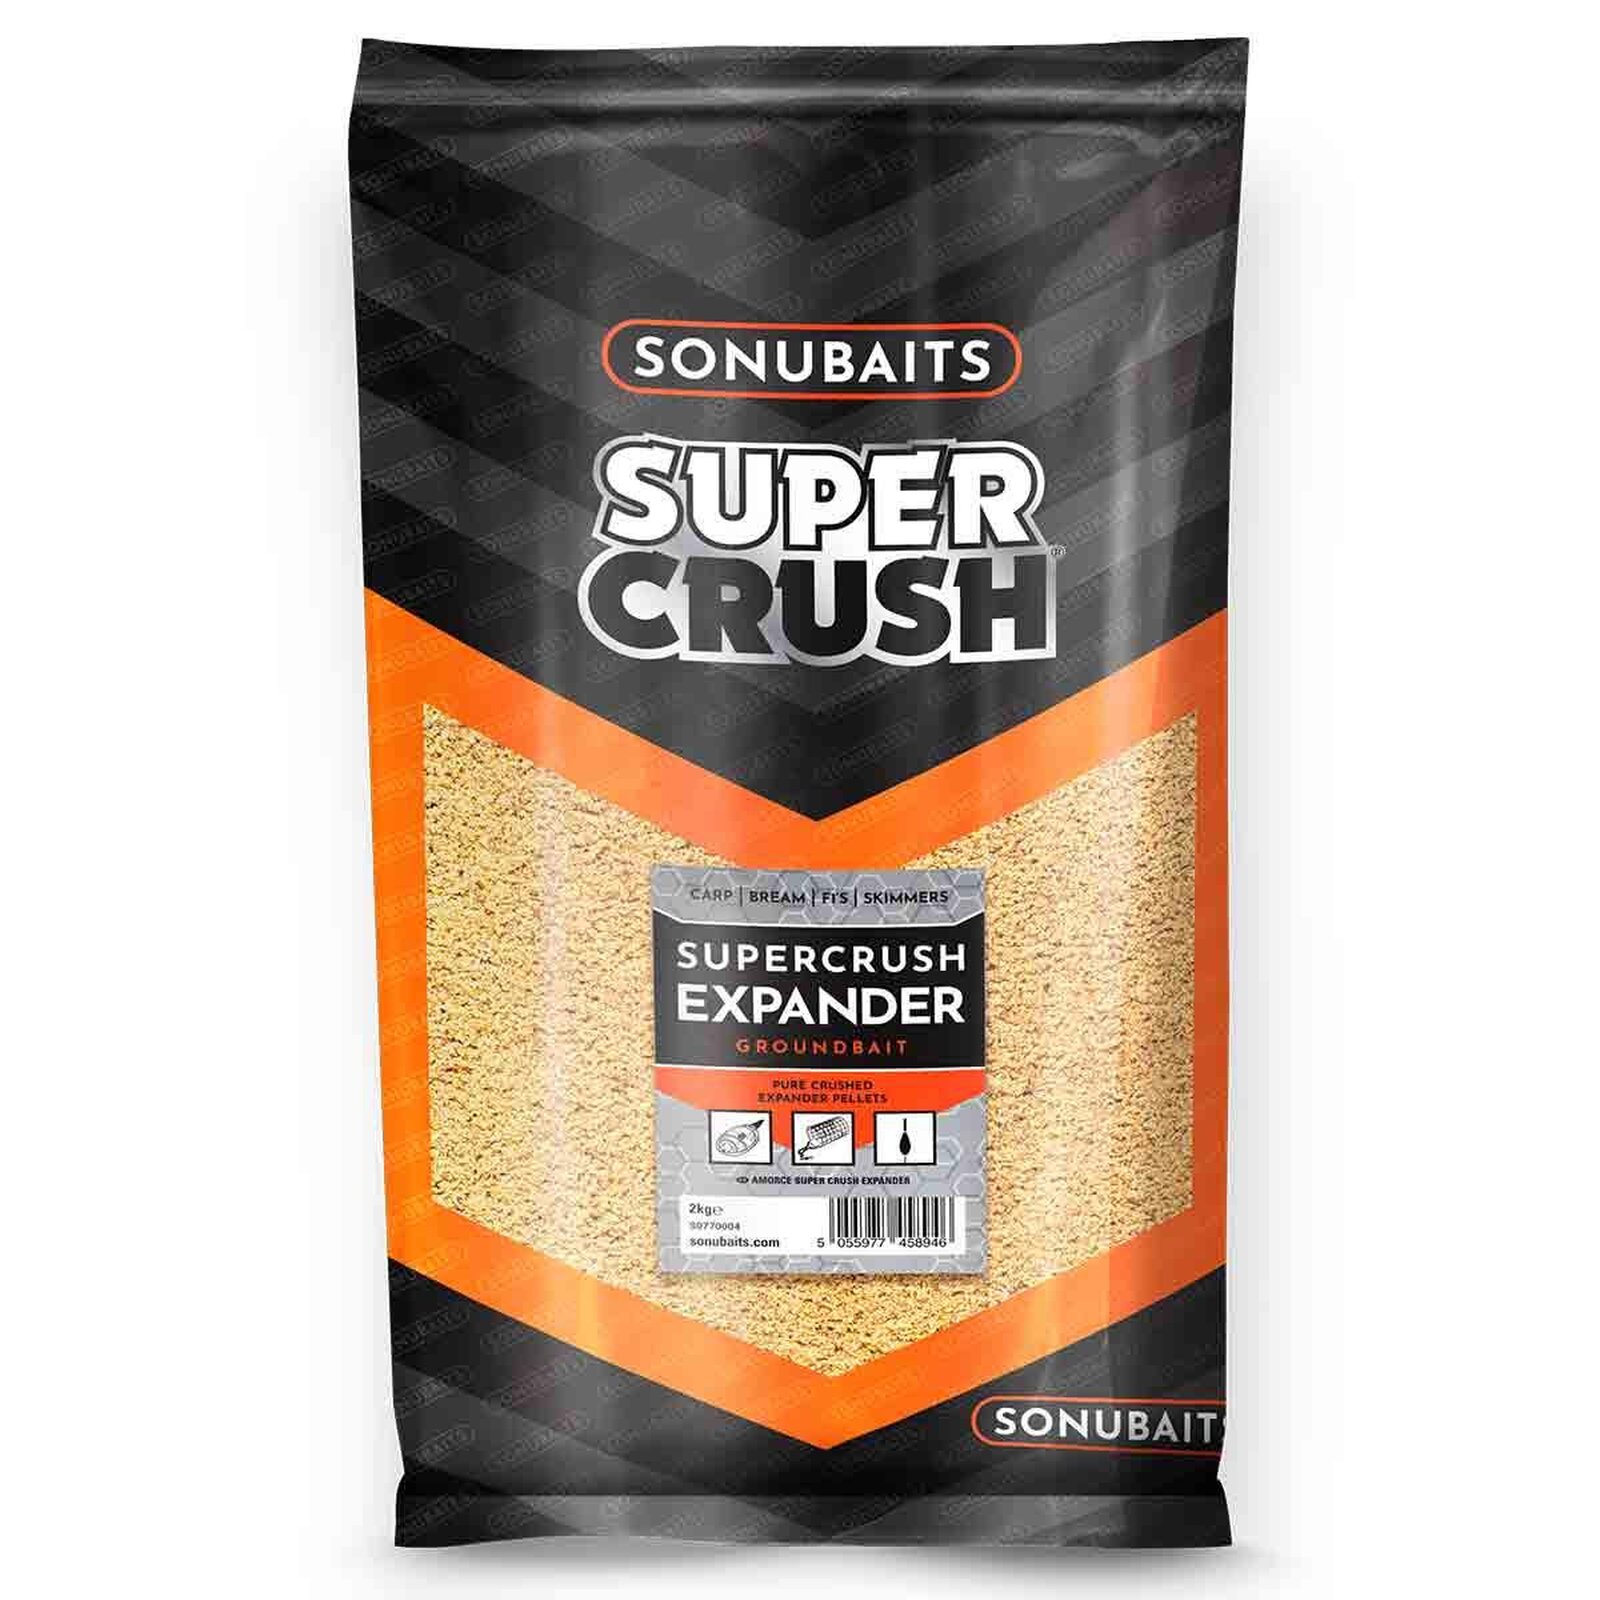 Sonubaits Supercrush Expander Pure écrasé Expander PELLETS 10 kg